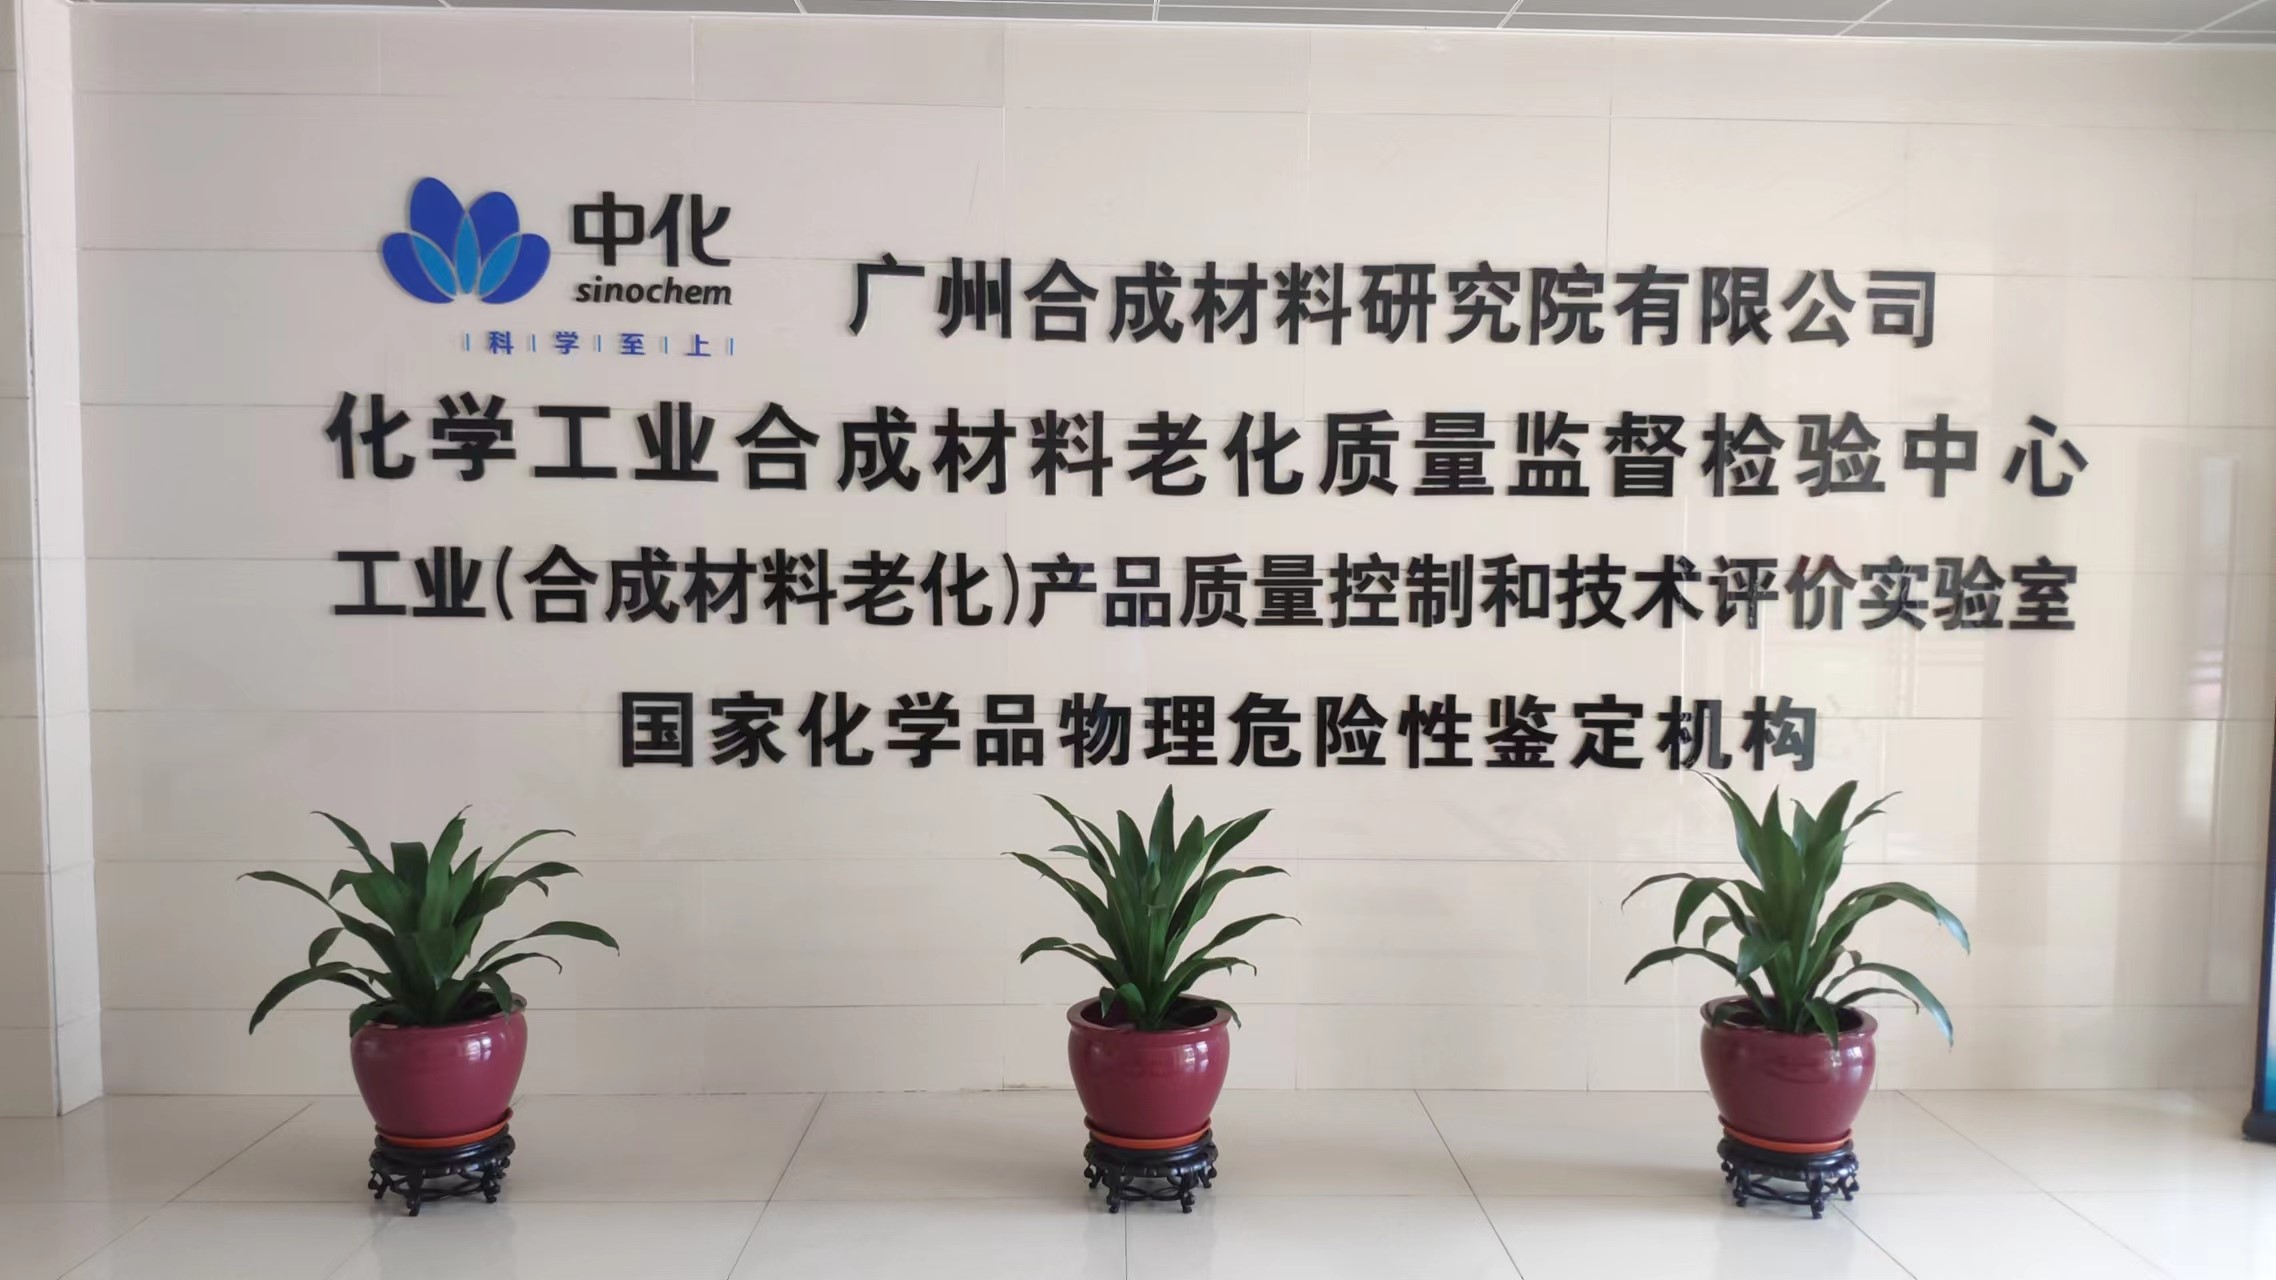 广州合成材料研究院有限公司在SY PT-598能力验证中取得满意结果